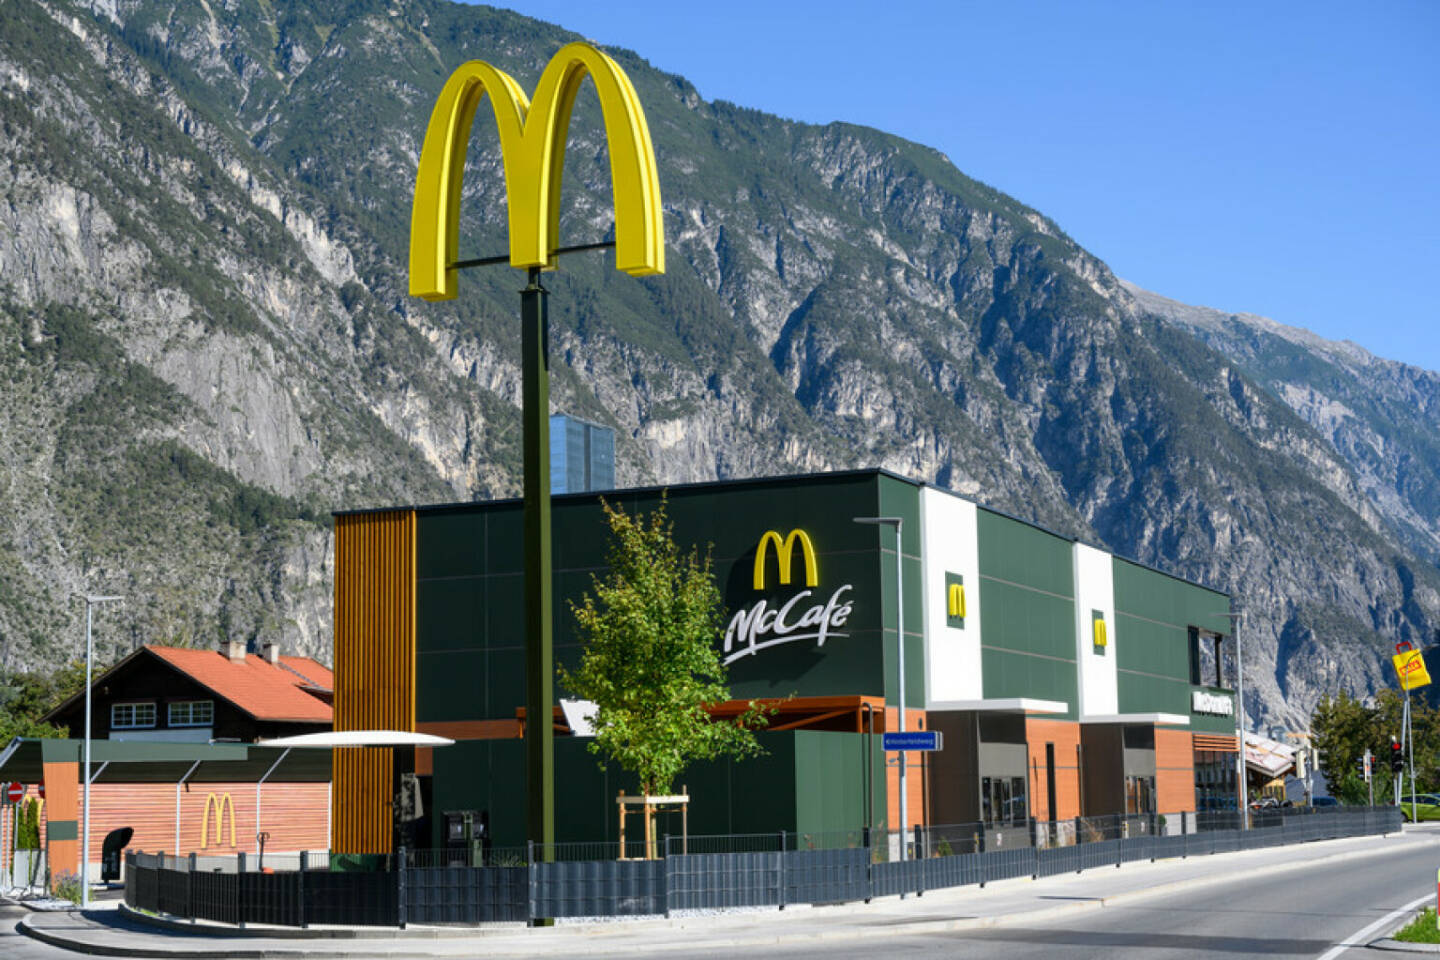 45 Jahre McDonald’s in Österreich: Das Unternehmen legt erstmals eine Wertschöpfungsstudie für Österreich vor. Mit einem Wertschöpfungseffekt von 608 Millionen Euro und einem Beschäftigungseffekt von 11.571 Arbeitsplätzen ist McDonald's mit seinen regionalen Franchisenehmer:innen ein starker Wirtschaftsfaktor und Jobmotor in Österreich.  Credit: McDonald’s Österreich